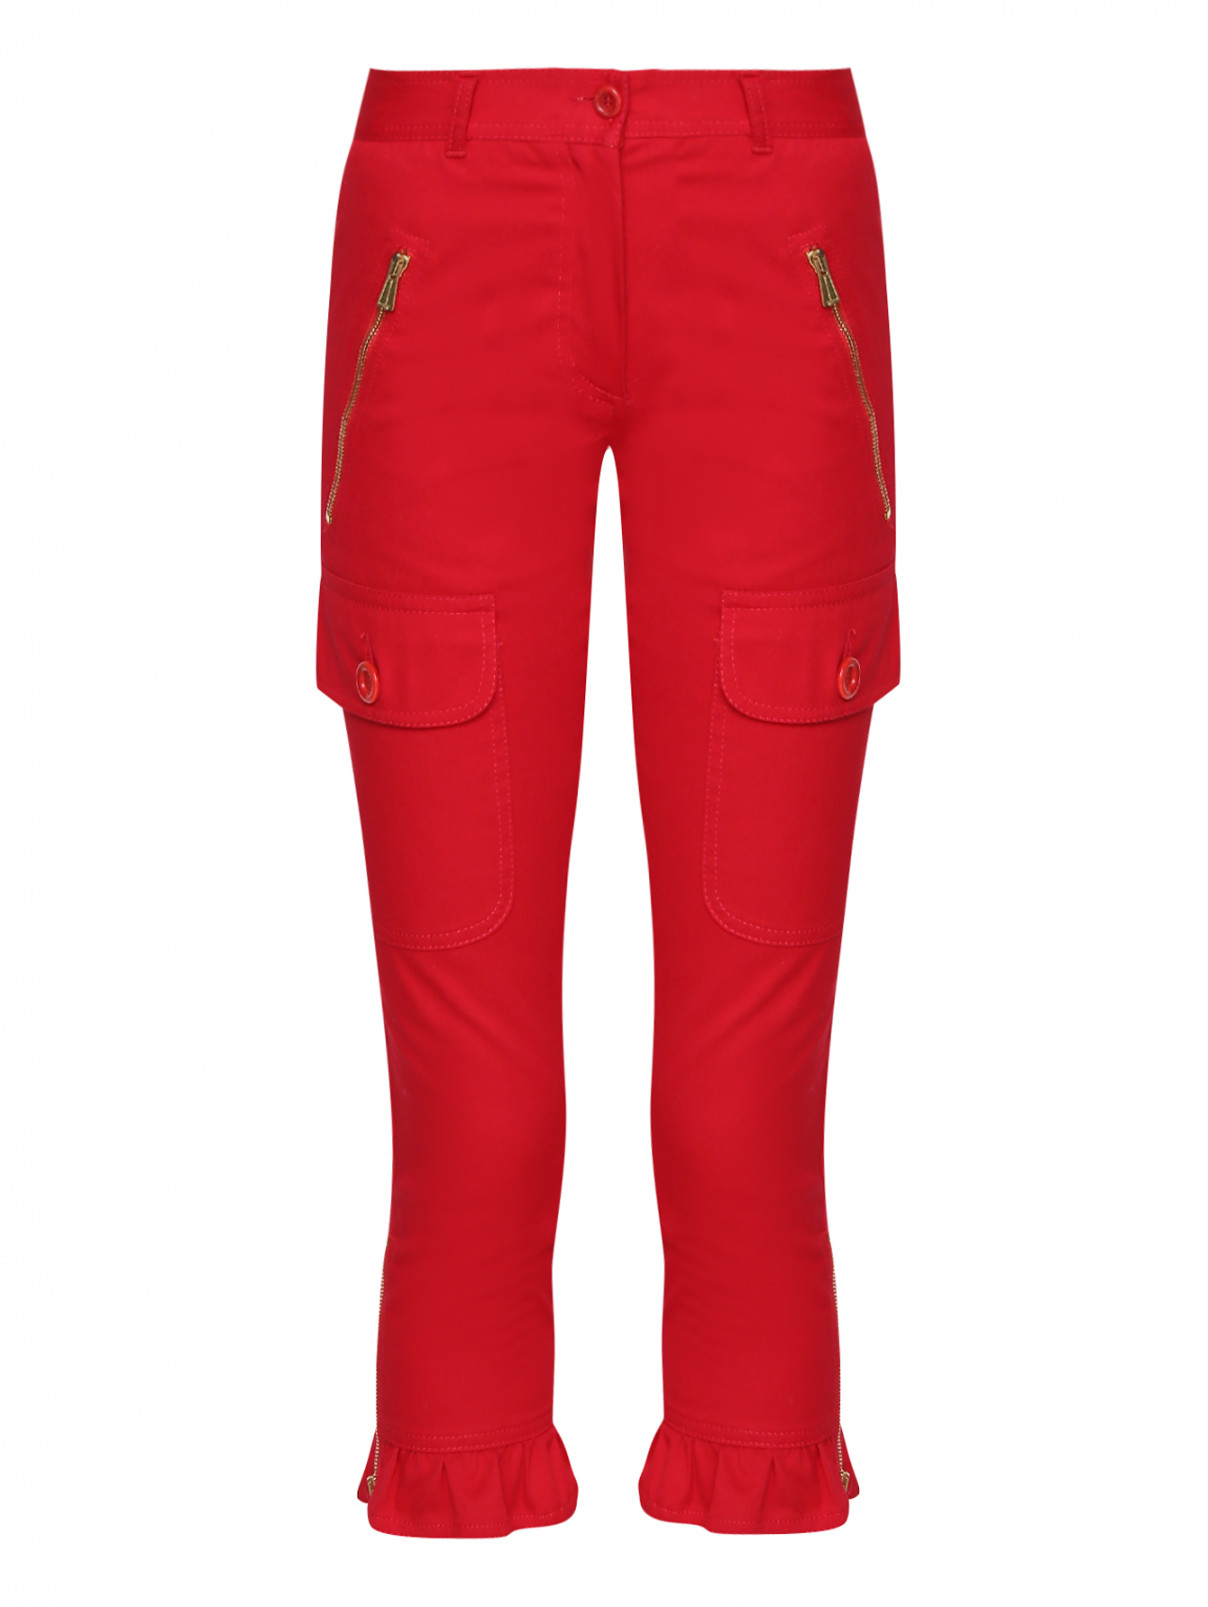 Бриджи из хлопка с накладными карманами Moschino  –  Общий вид  – Цвет:  Красный